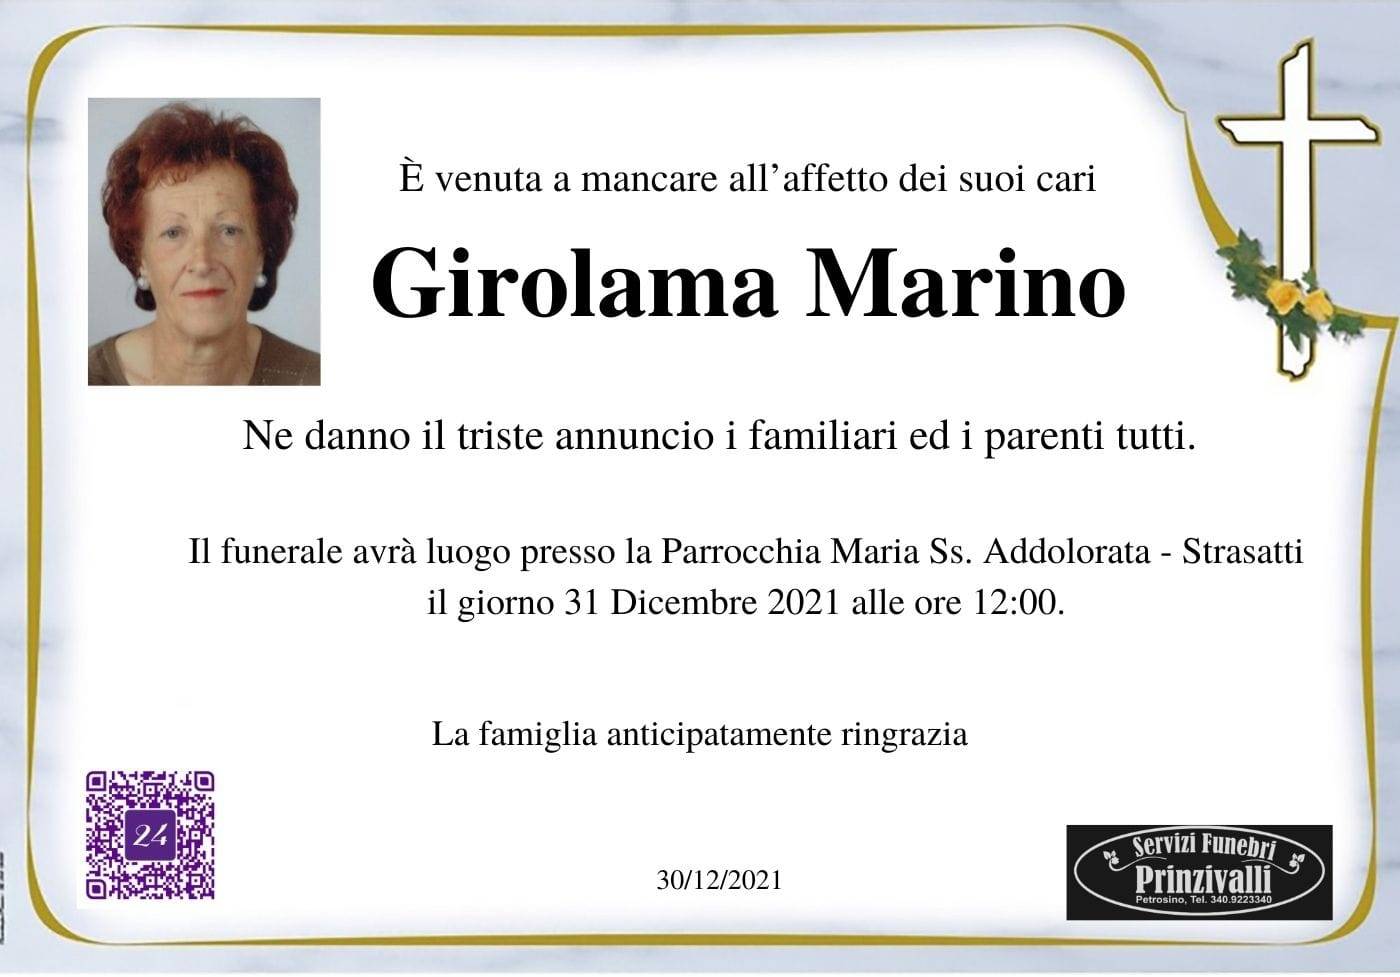 Girolama Marino